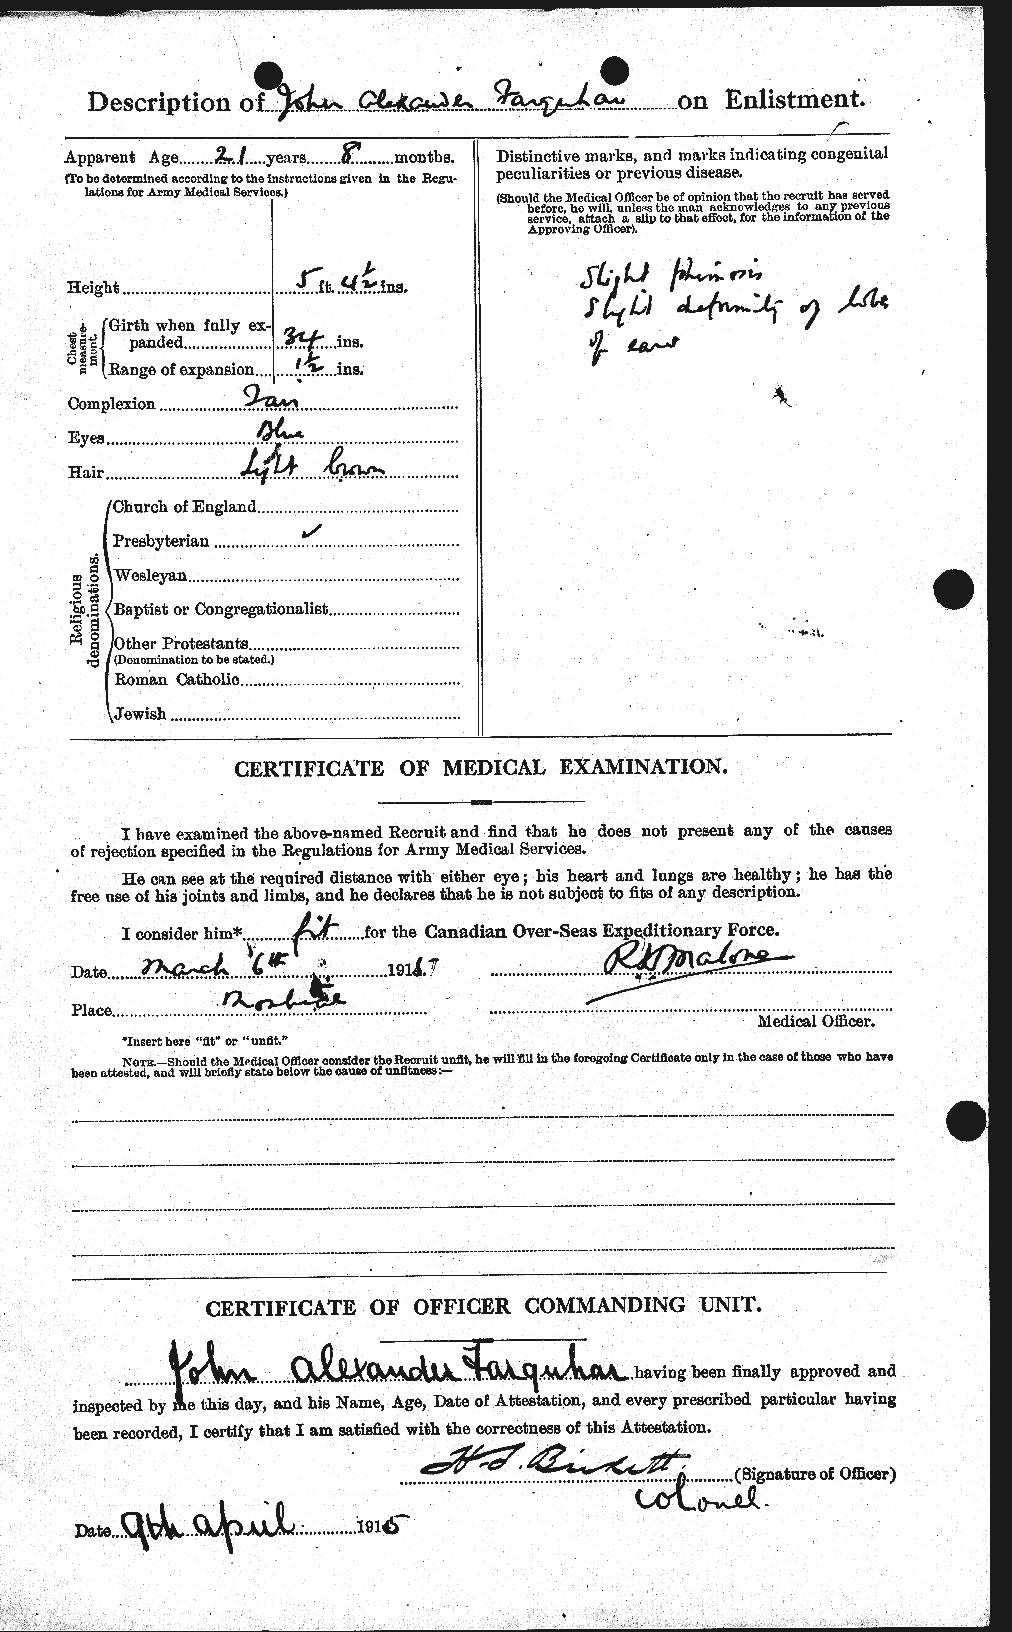 Dossiers du Personnel de la Première Guerre mondiale - CEC 318780b